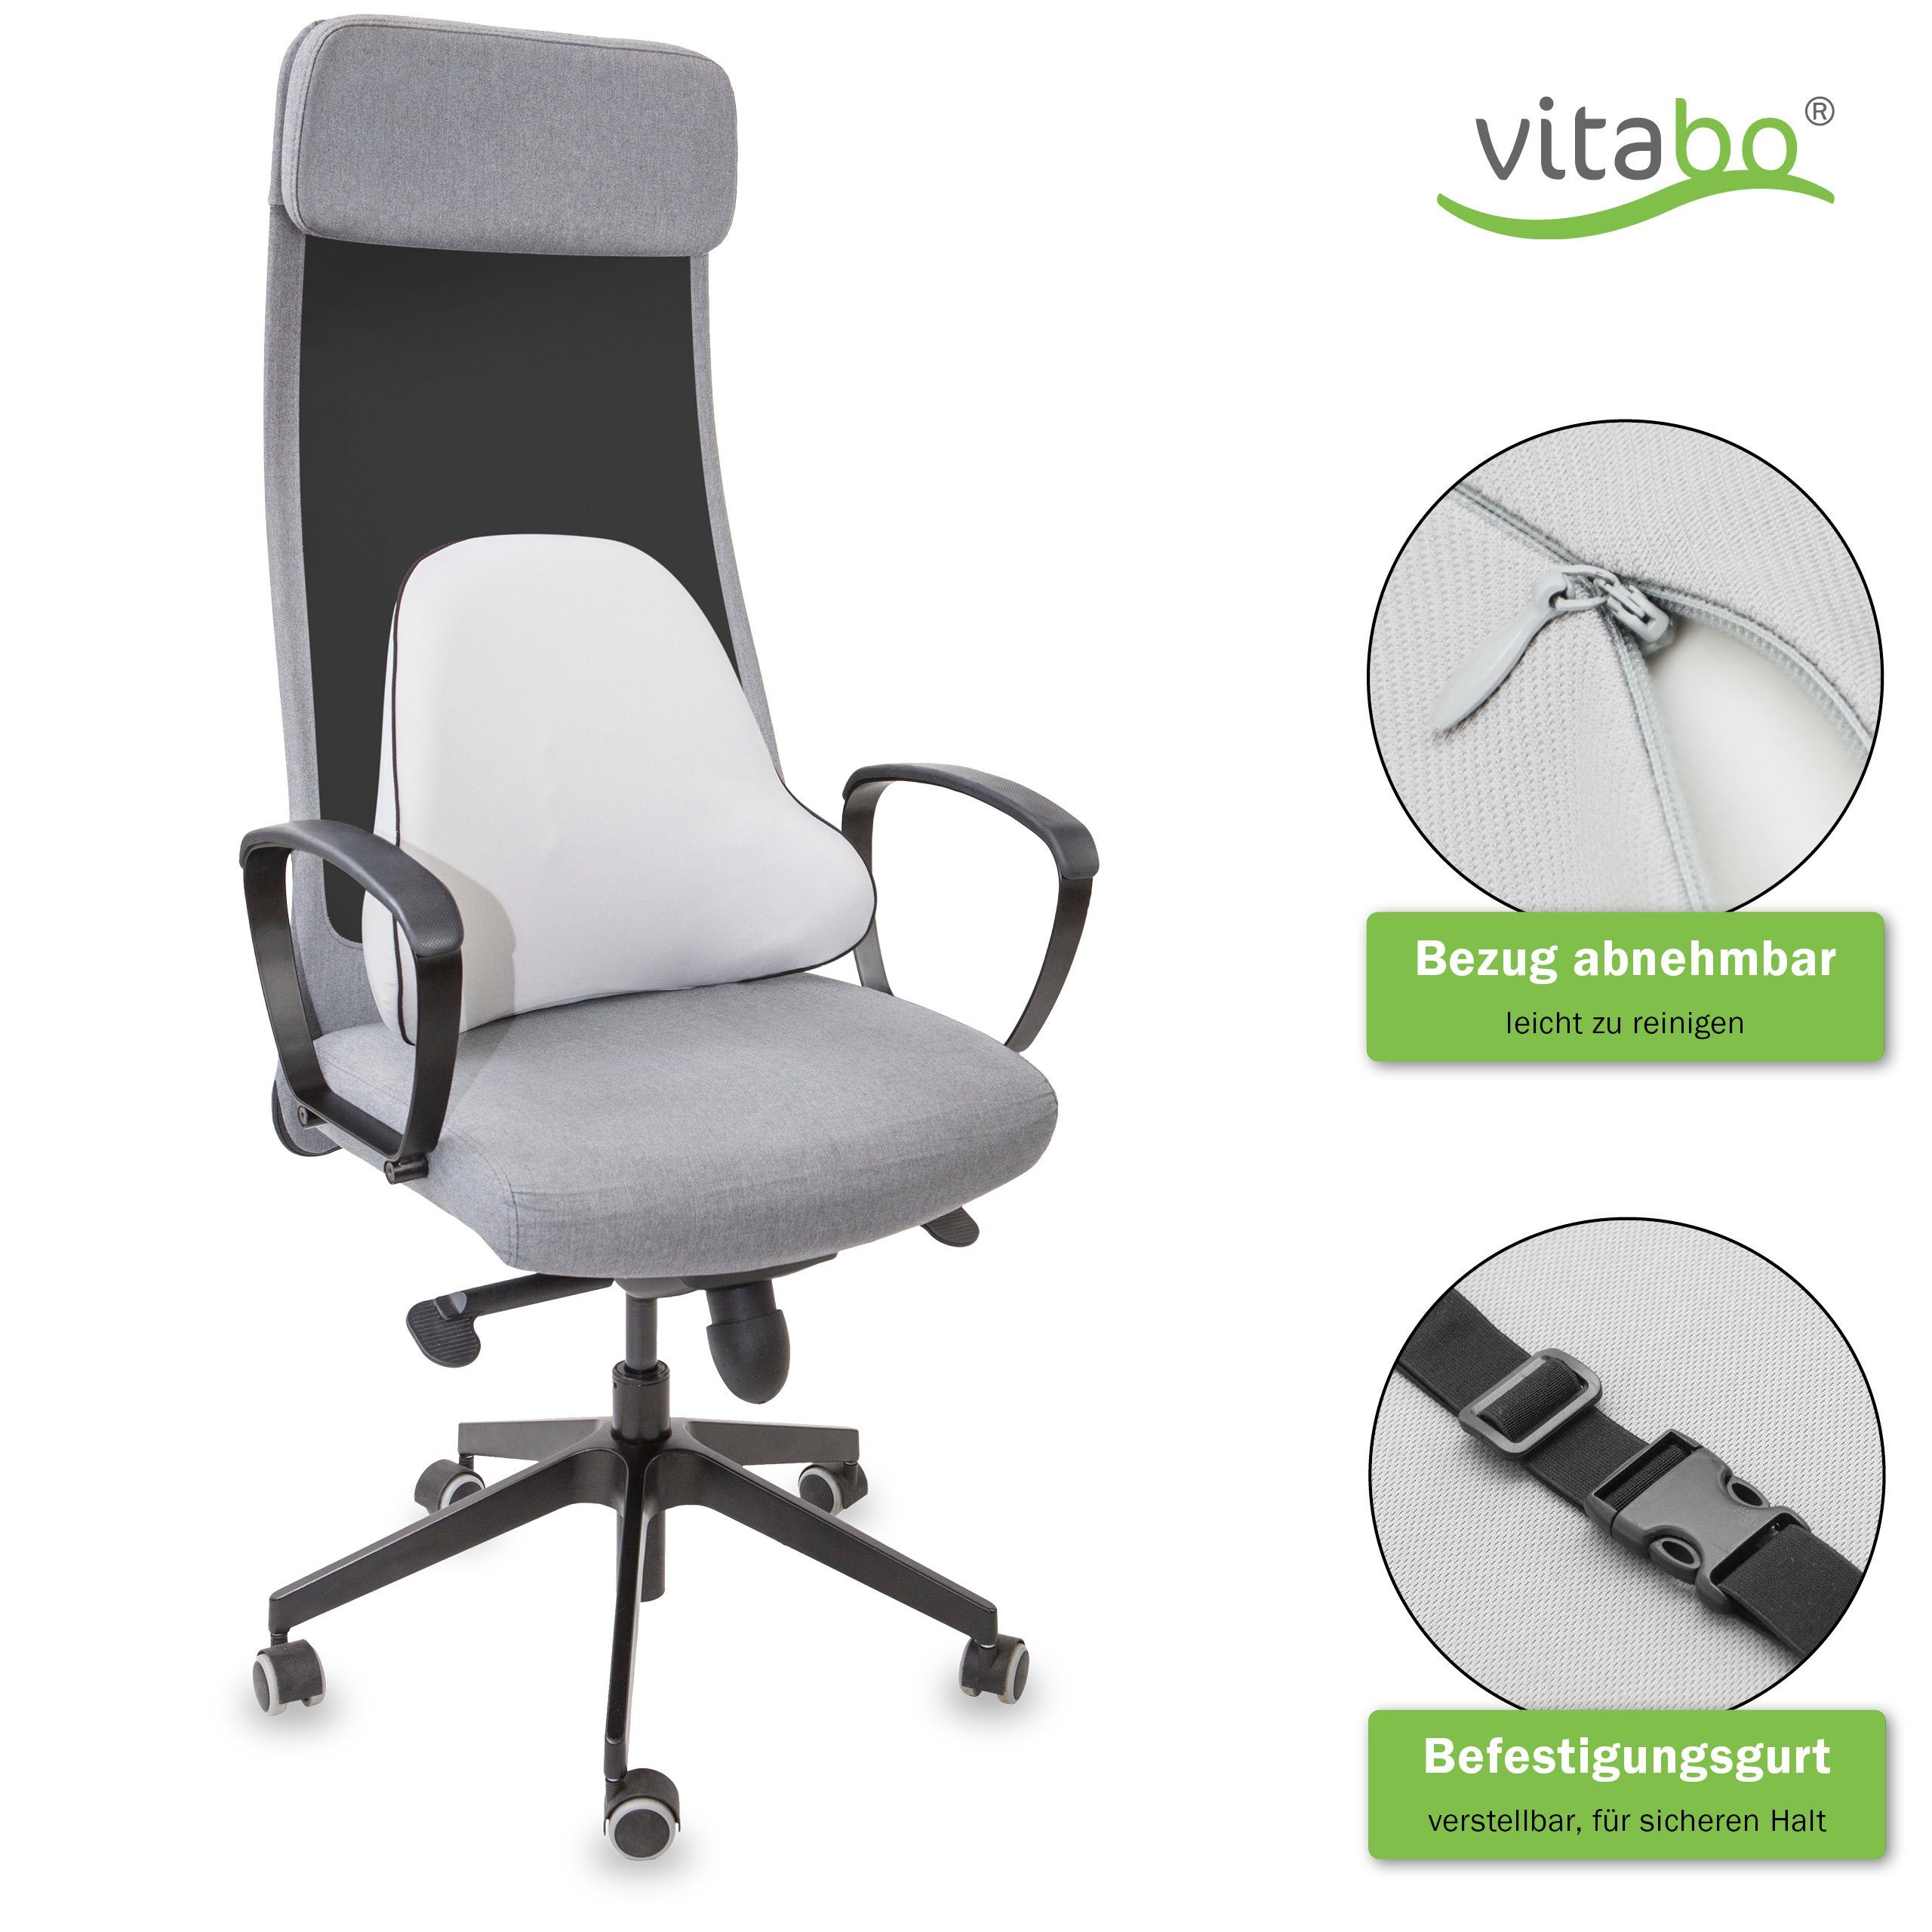 Vitabo Rückenkissen Vitabo breites Rückenkissen – ergonomisches Lendenkissen  I Lordosenstütze Rückenstütze für Büro Auto (Grau), 1-tlg.